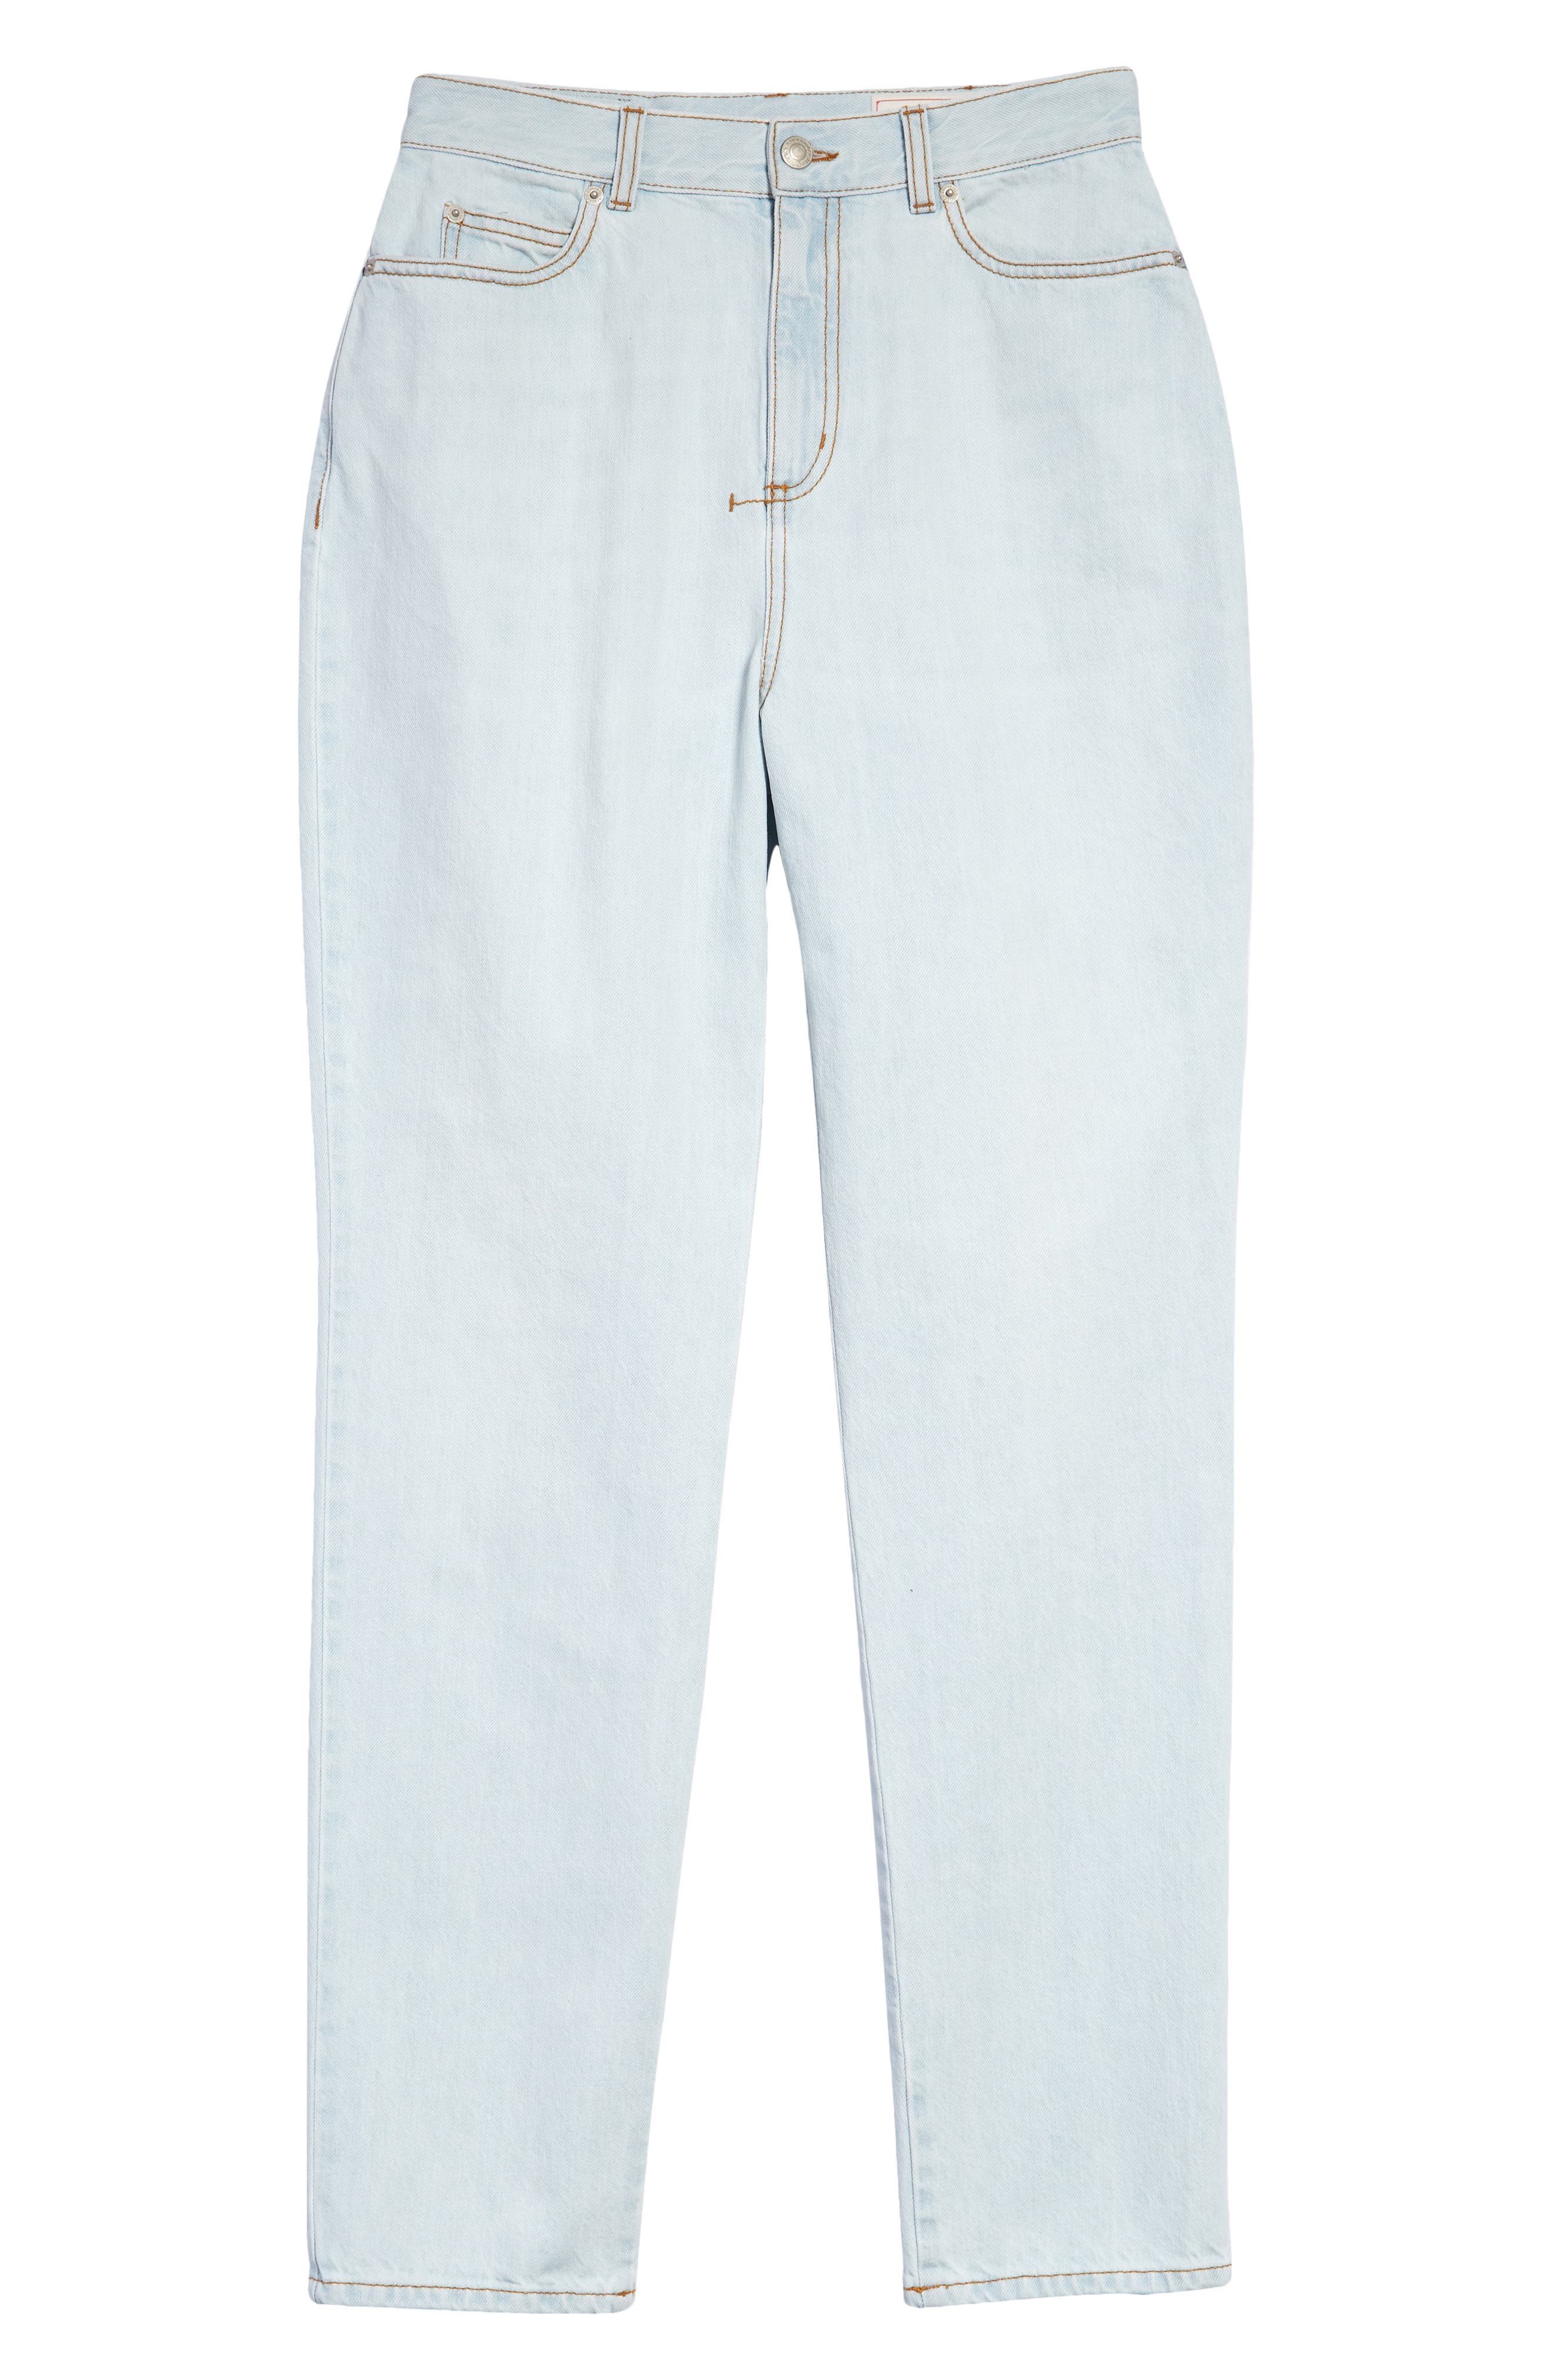 Alexander McQueen High Waist Slim Fit Jeans in Pale Wash